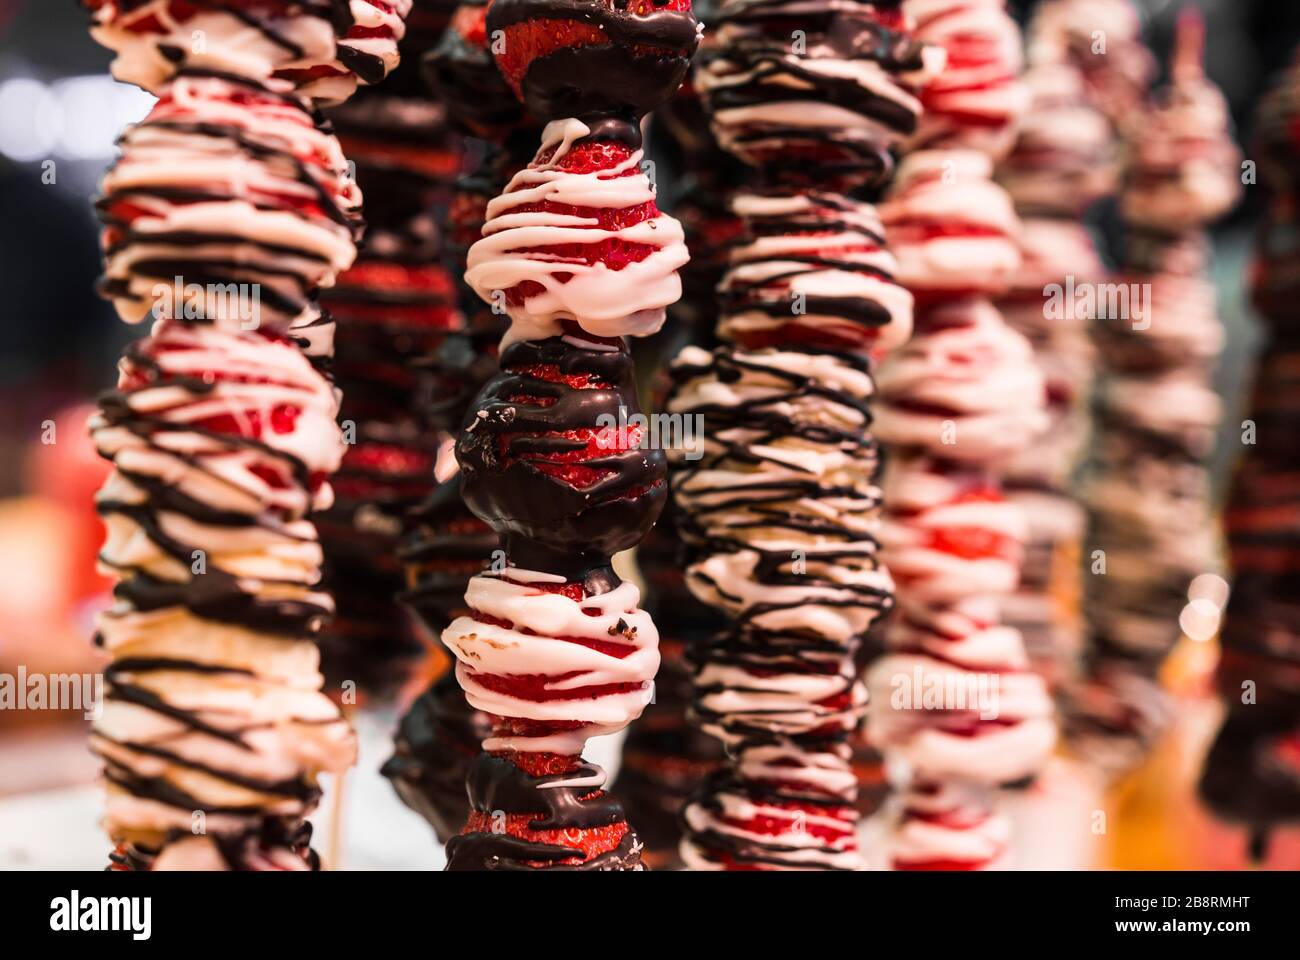 Ein süßer Dessert-Snack aus Erdbeere mit Schokolade am Bauernmarkt-Stall. Stockfoto